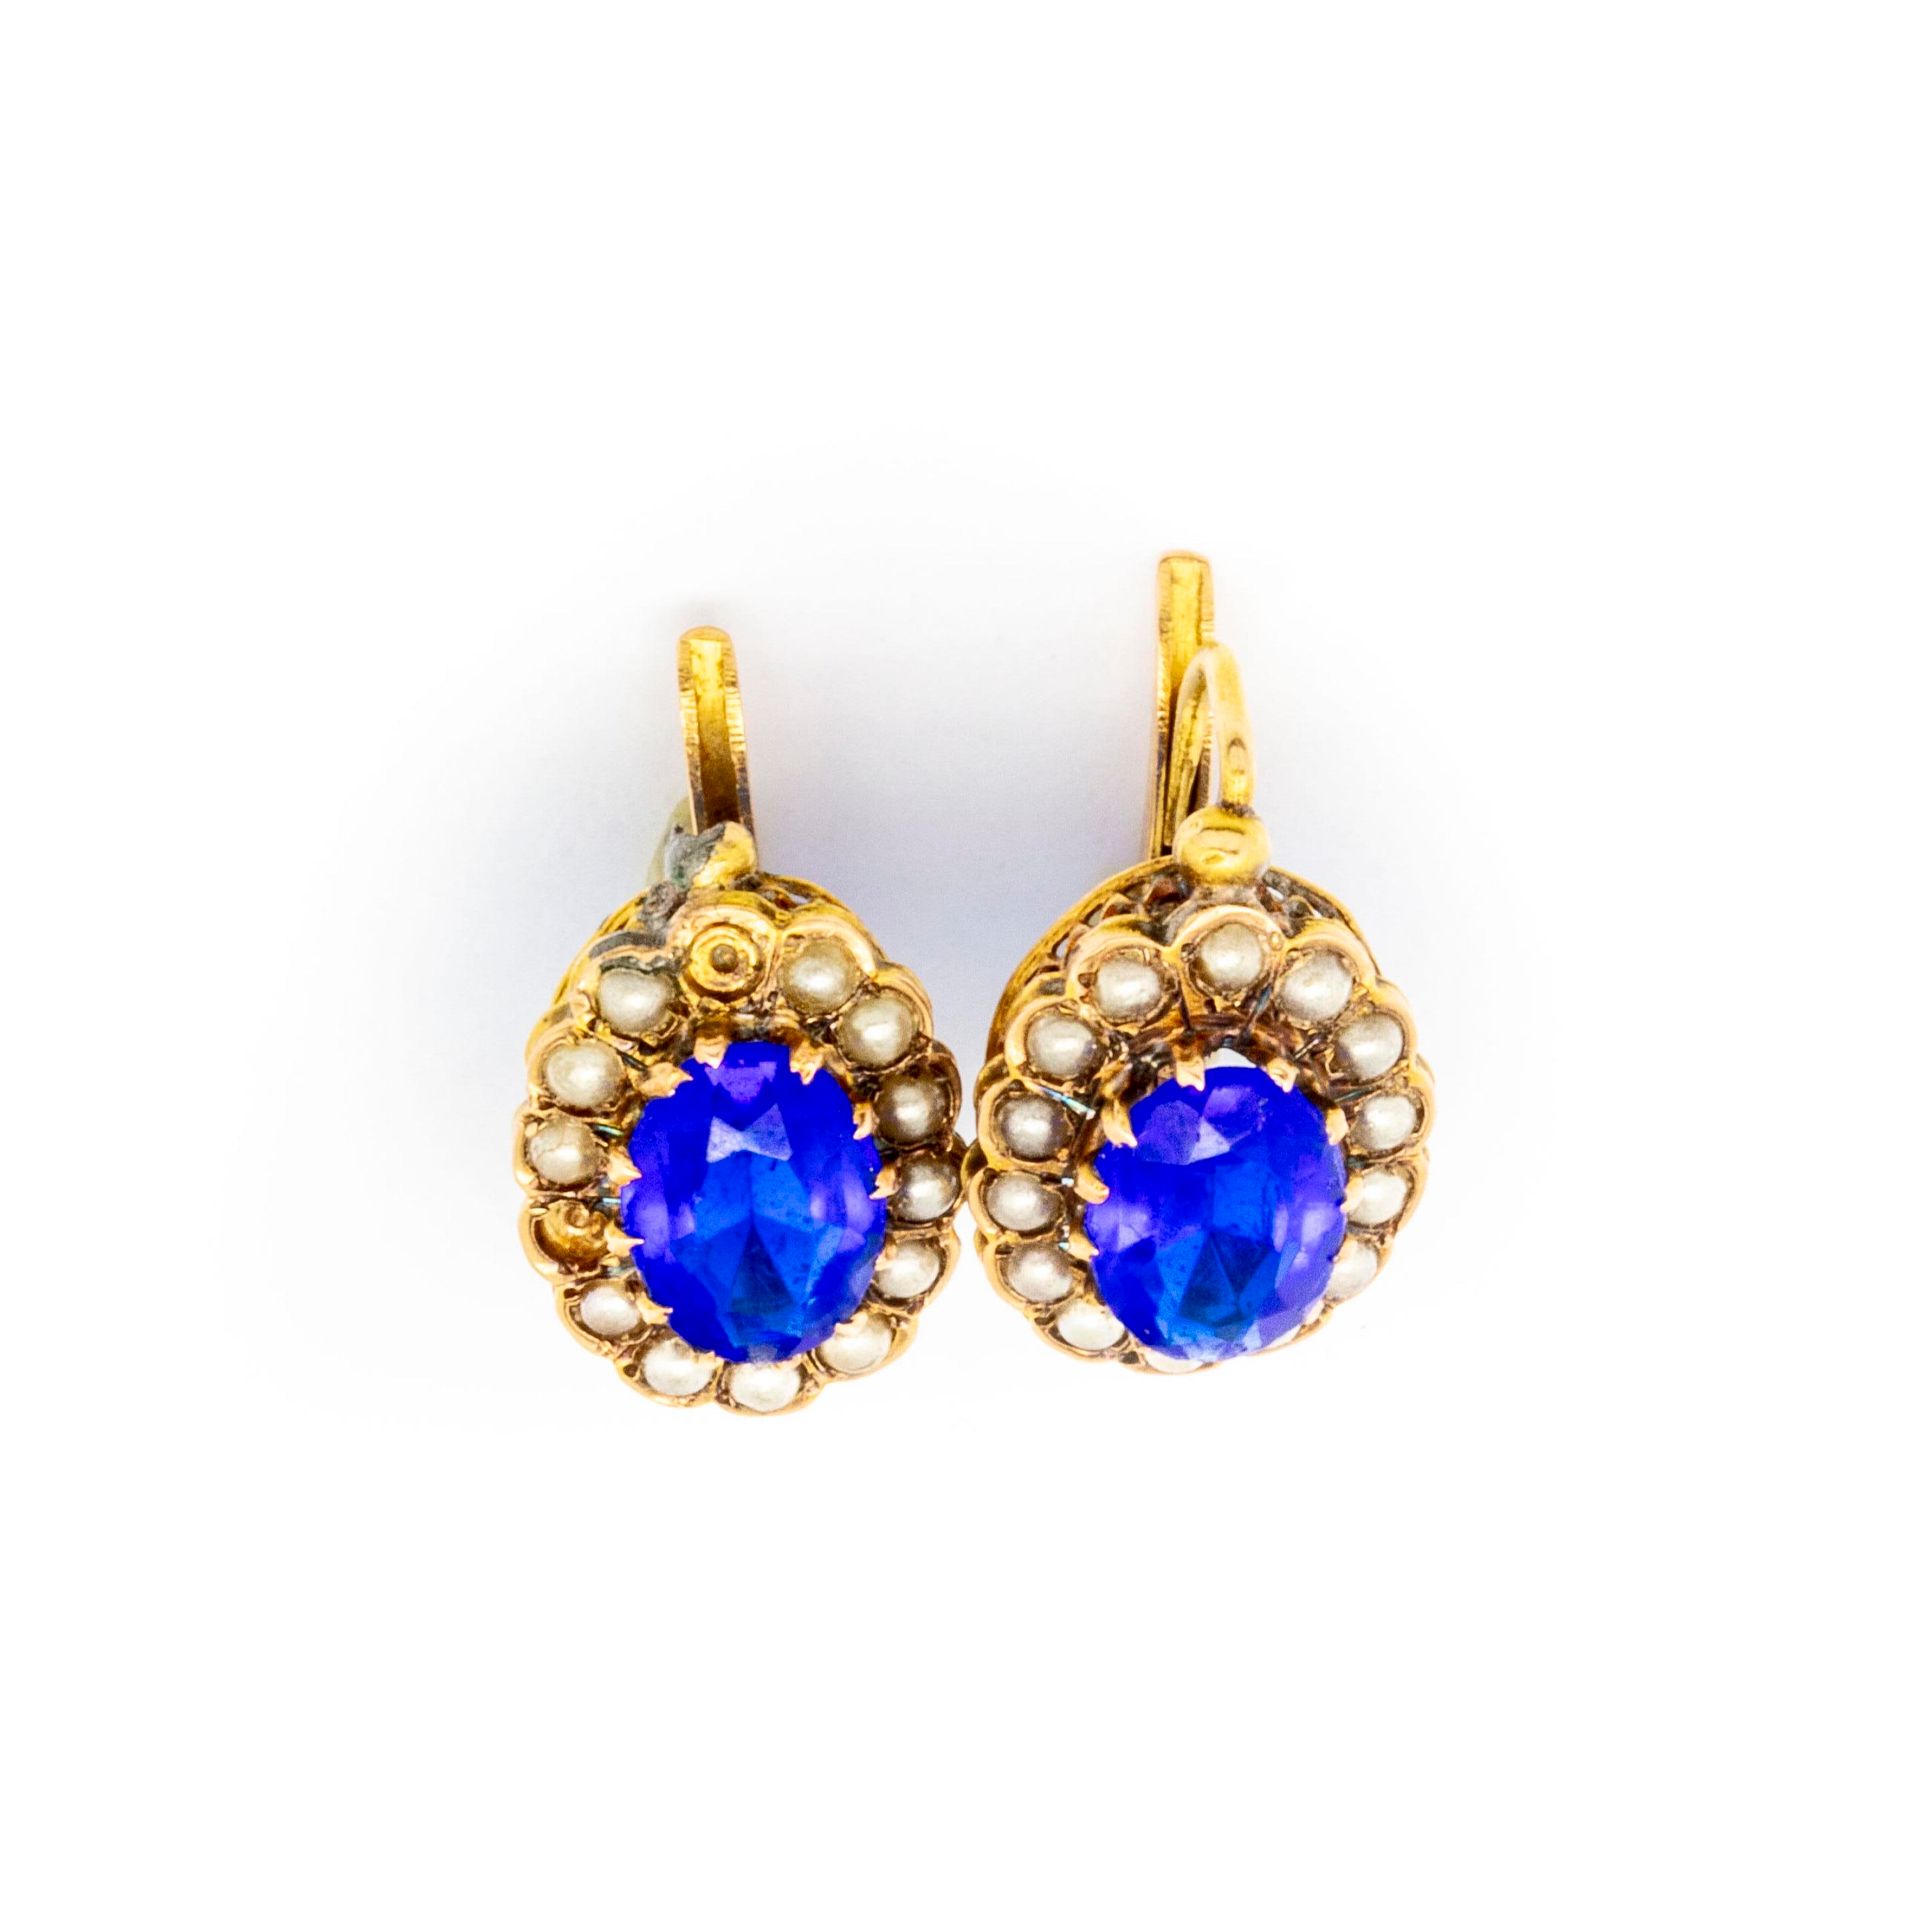 Null Pendientes de oro amarillo y perlas con piedras azules

Peso bruto: 2,1 g.
&hellip;